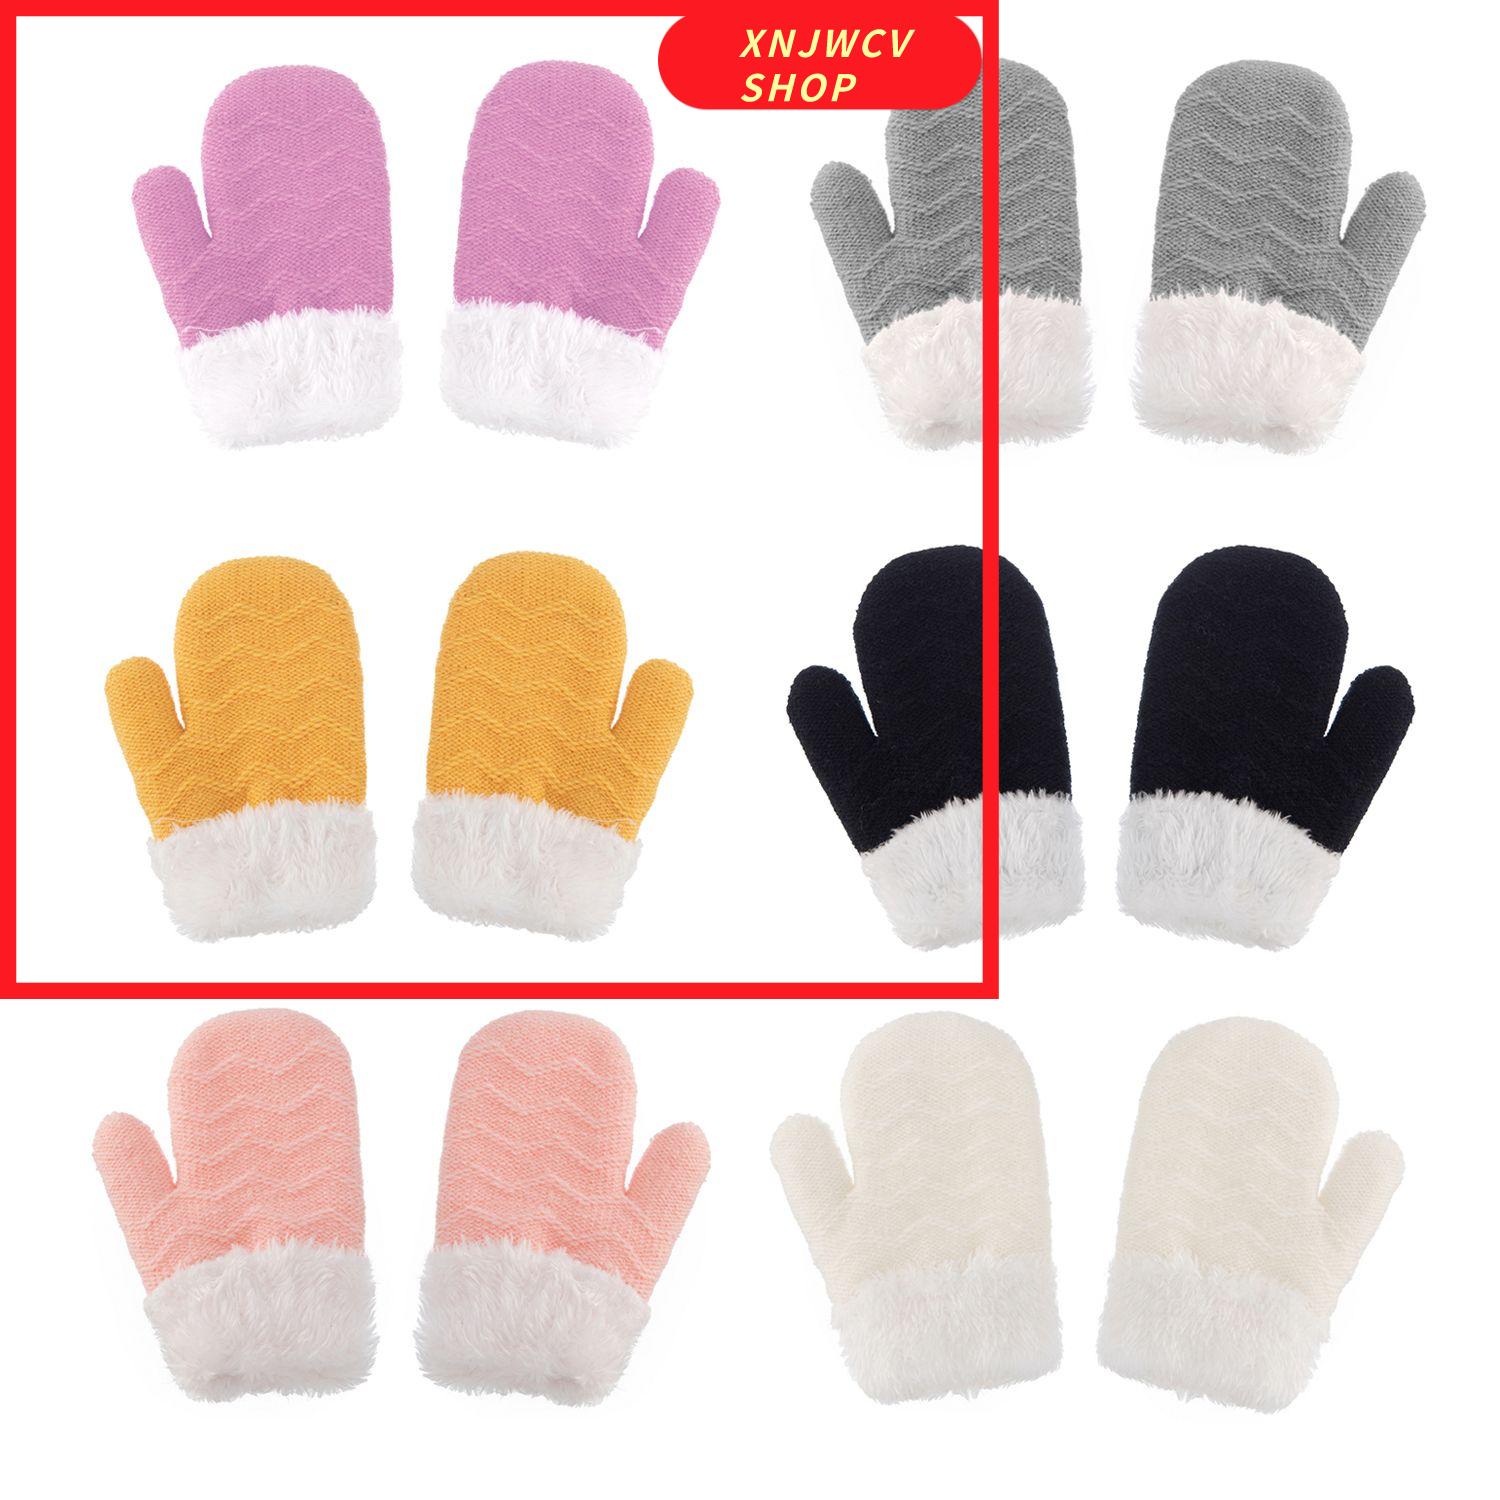 XNJWCV SHOP 0-3 Years Winter Warm Pom Pom Hat Kids Hat Gloves Set Mittens